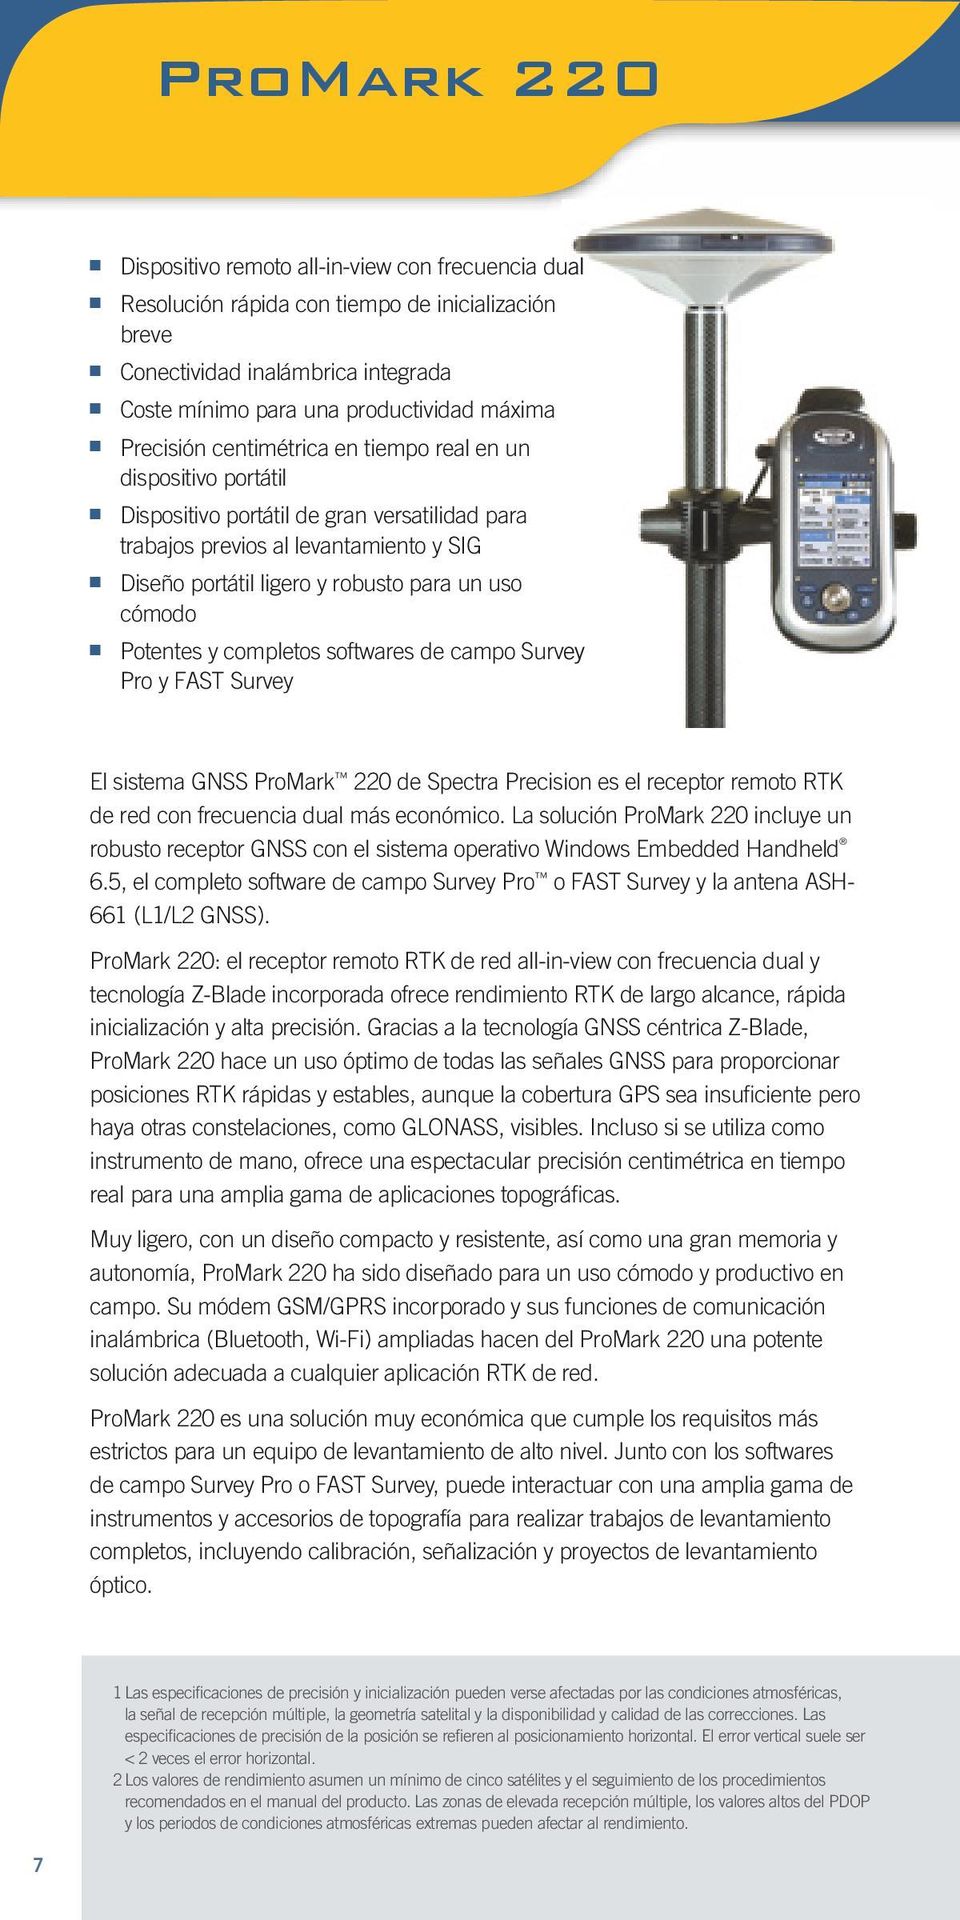 uso cómodo Potentes y completos softwares de campo Survey Pro y FAST Survey El sistema GNSS ProMark 220 de Spectra Precision es el receptor remoto RTK de red con frecuencia dual más económico.